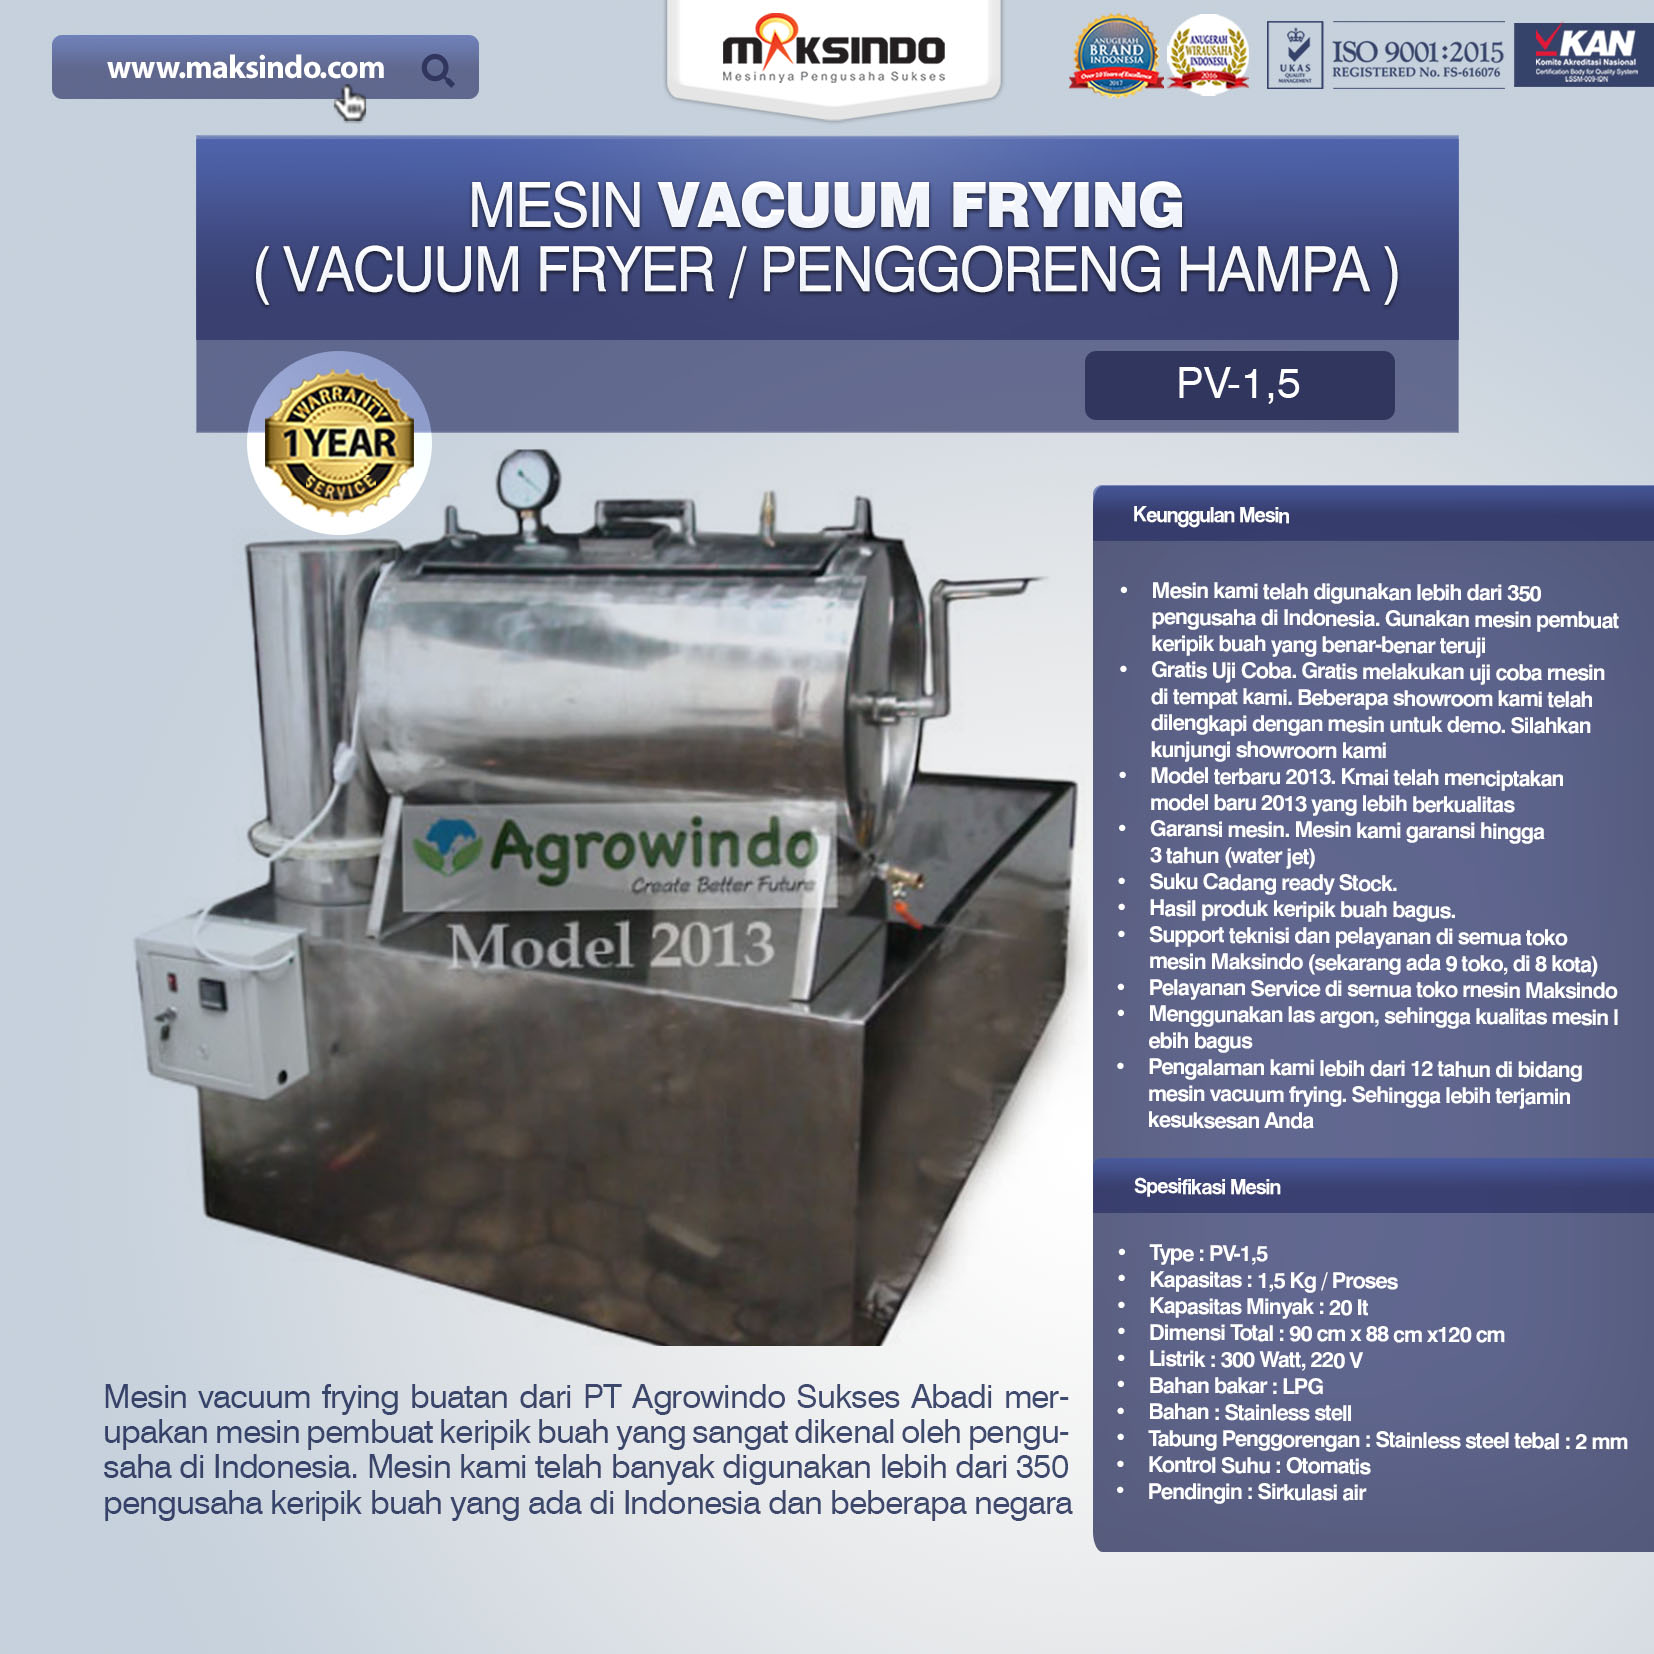 Jual Mesin Vacuum Frying Kapasitas 1.5 kg di Pekanbaru